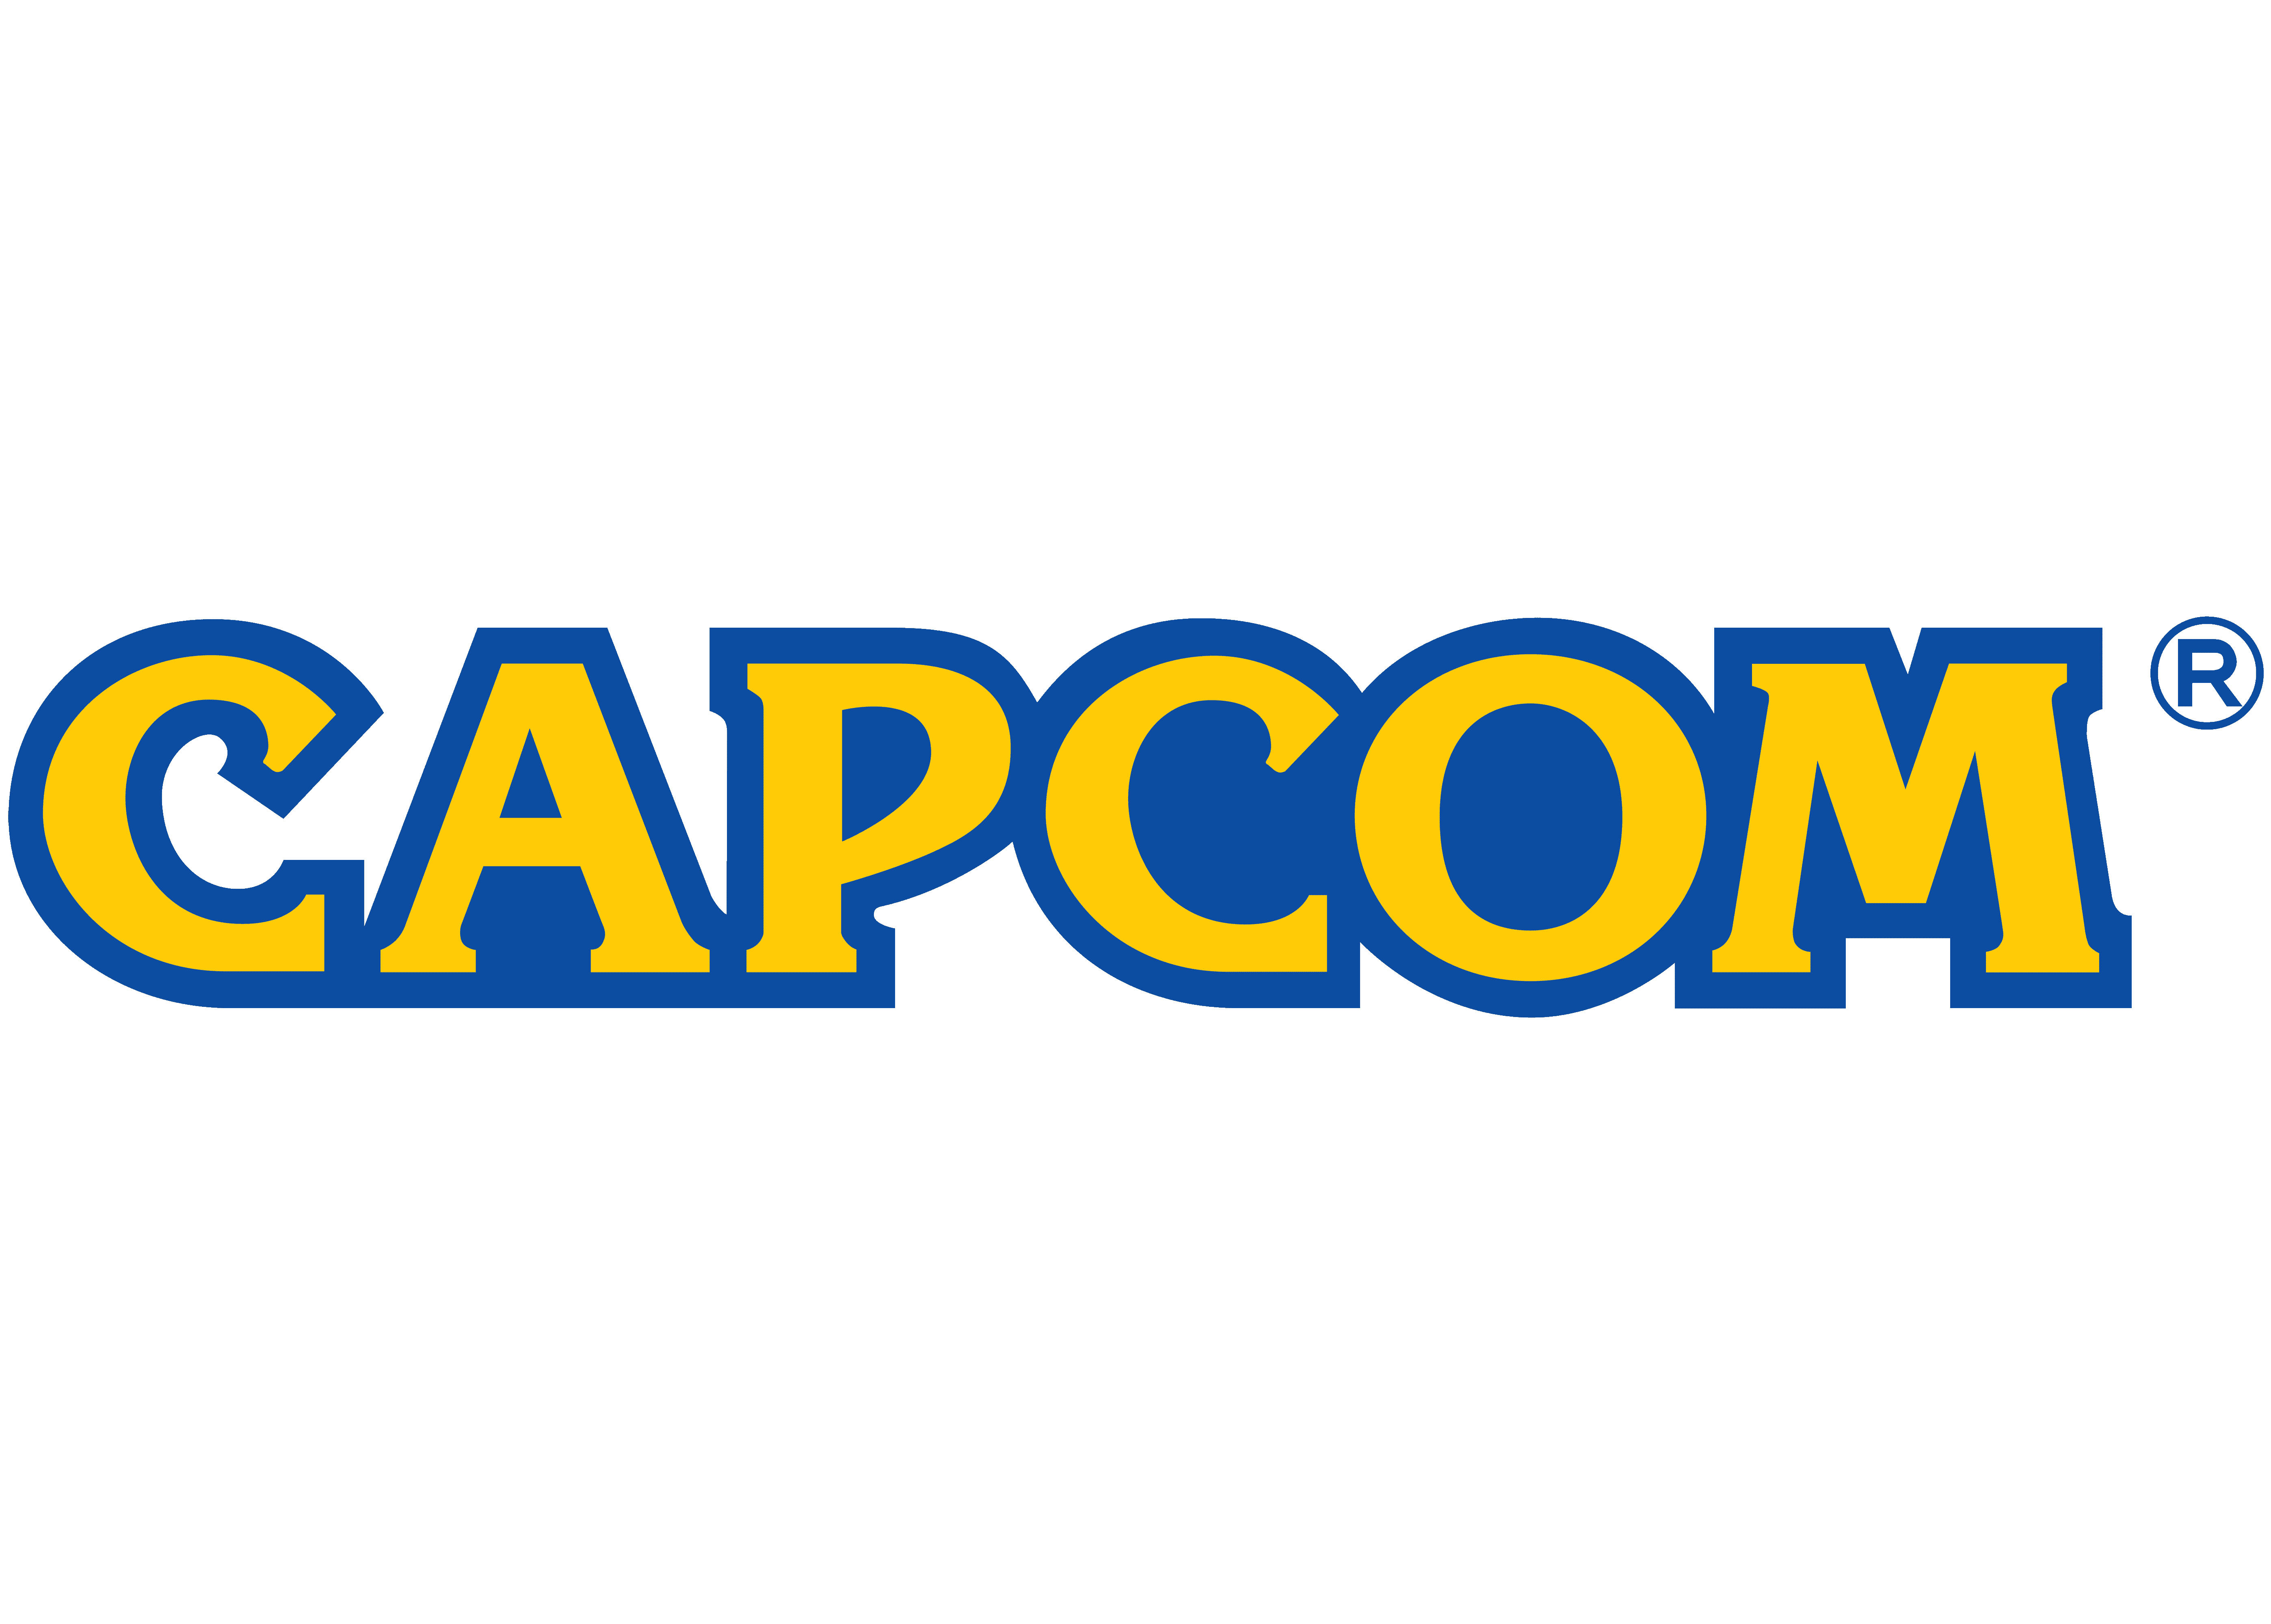 Capcom-logo.png